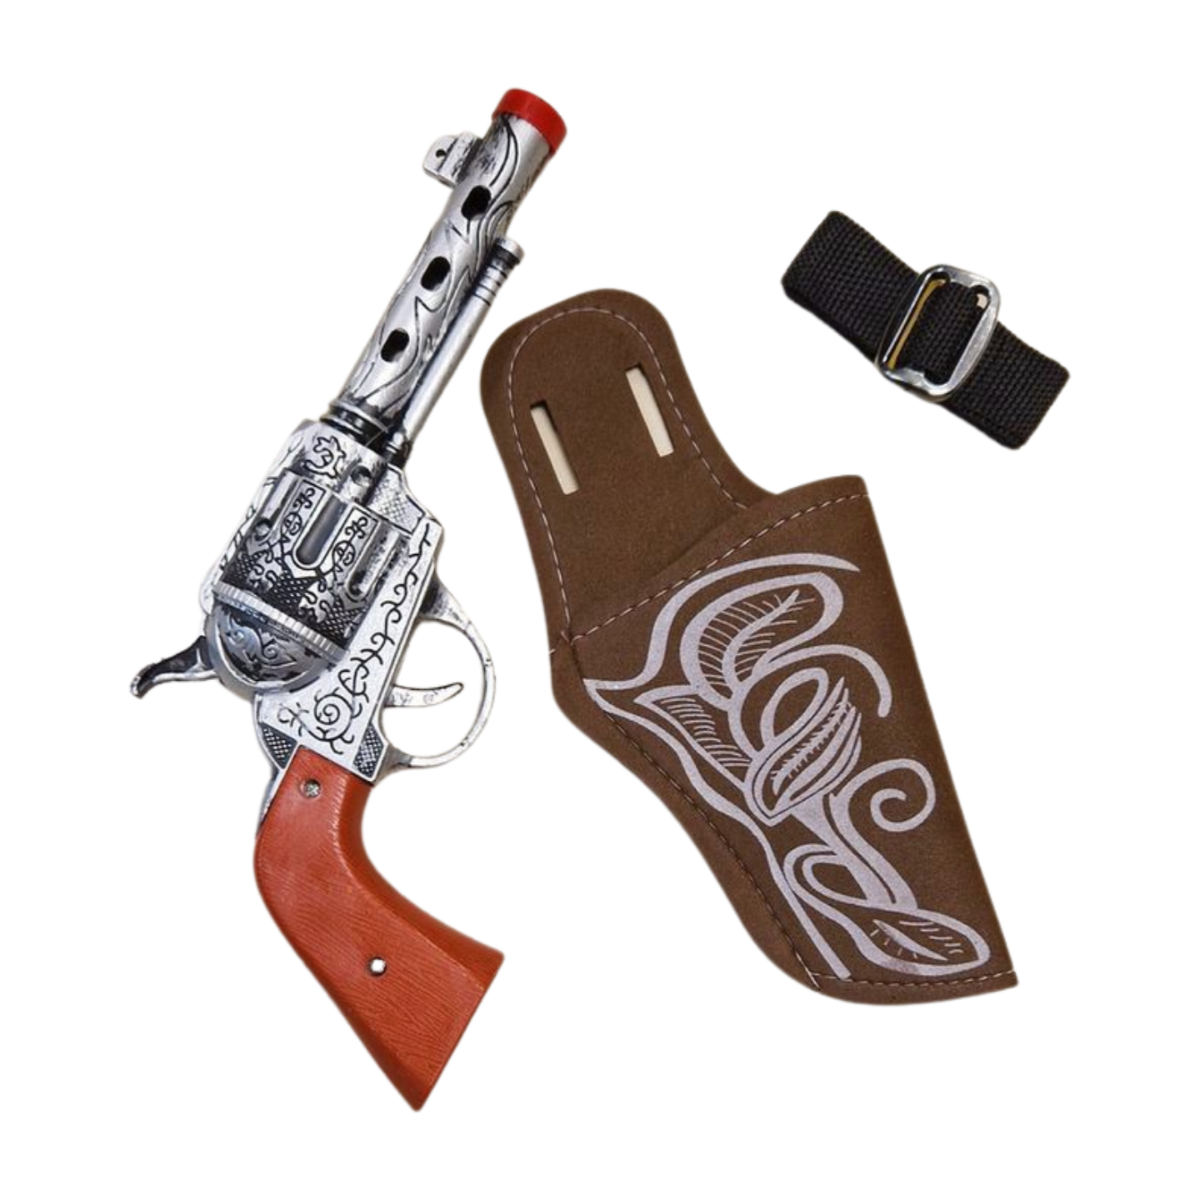 Revolver mit Holster und Gürtel Sherrifstern Fasching Karneval Party Pistolengürtel